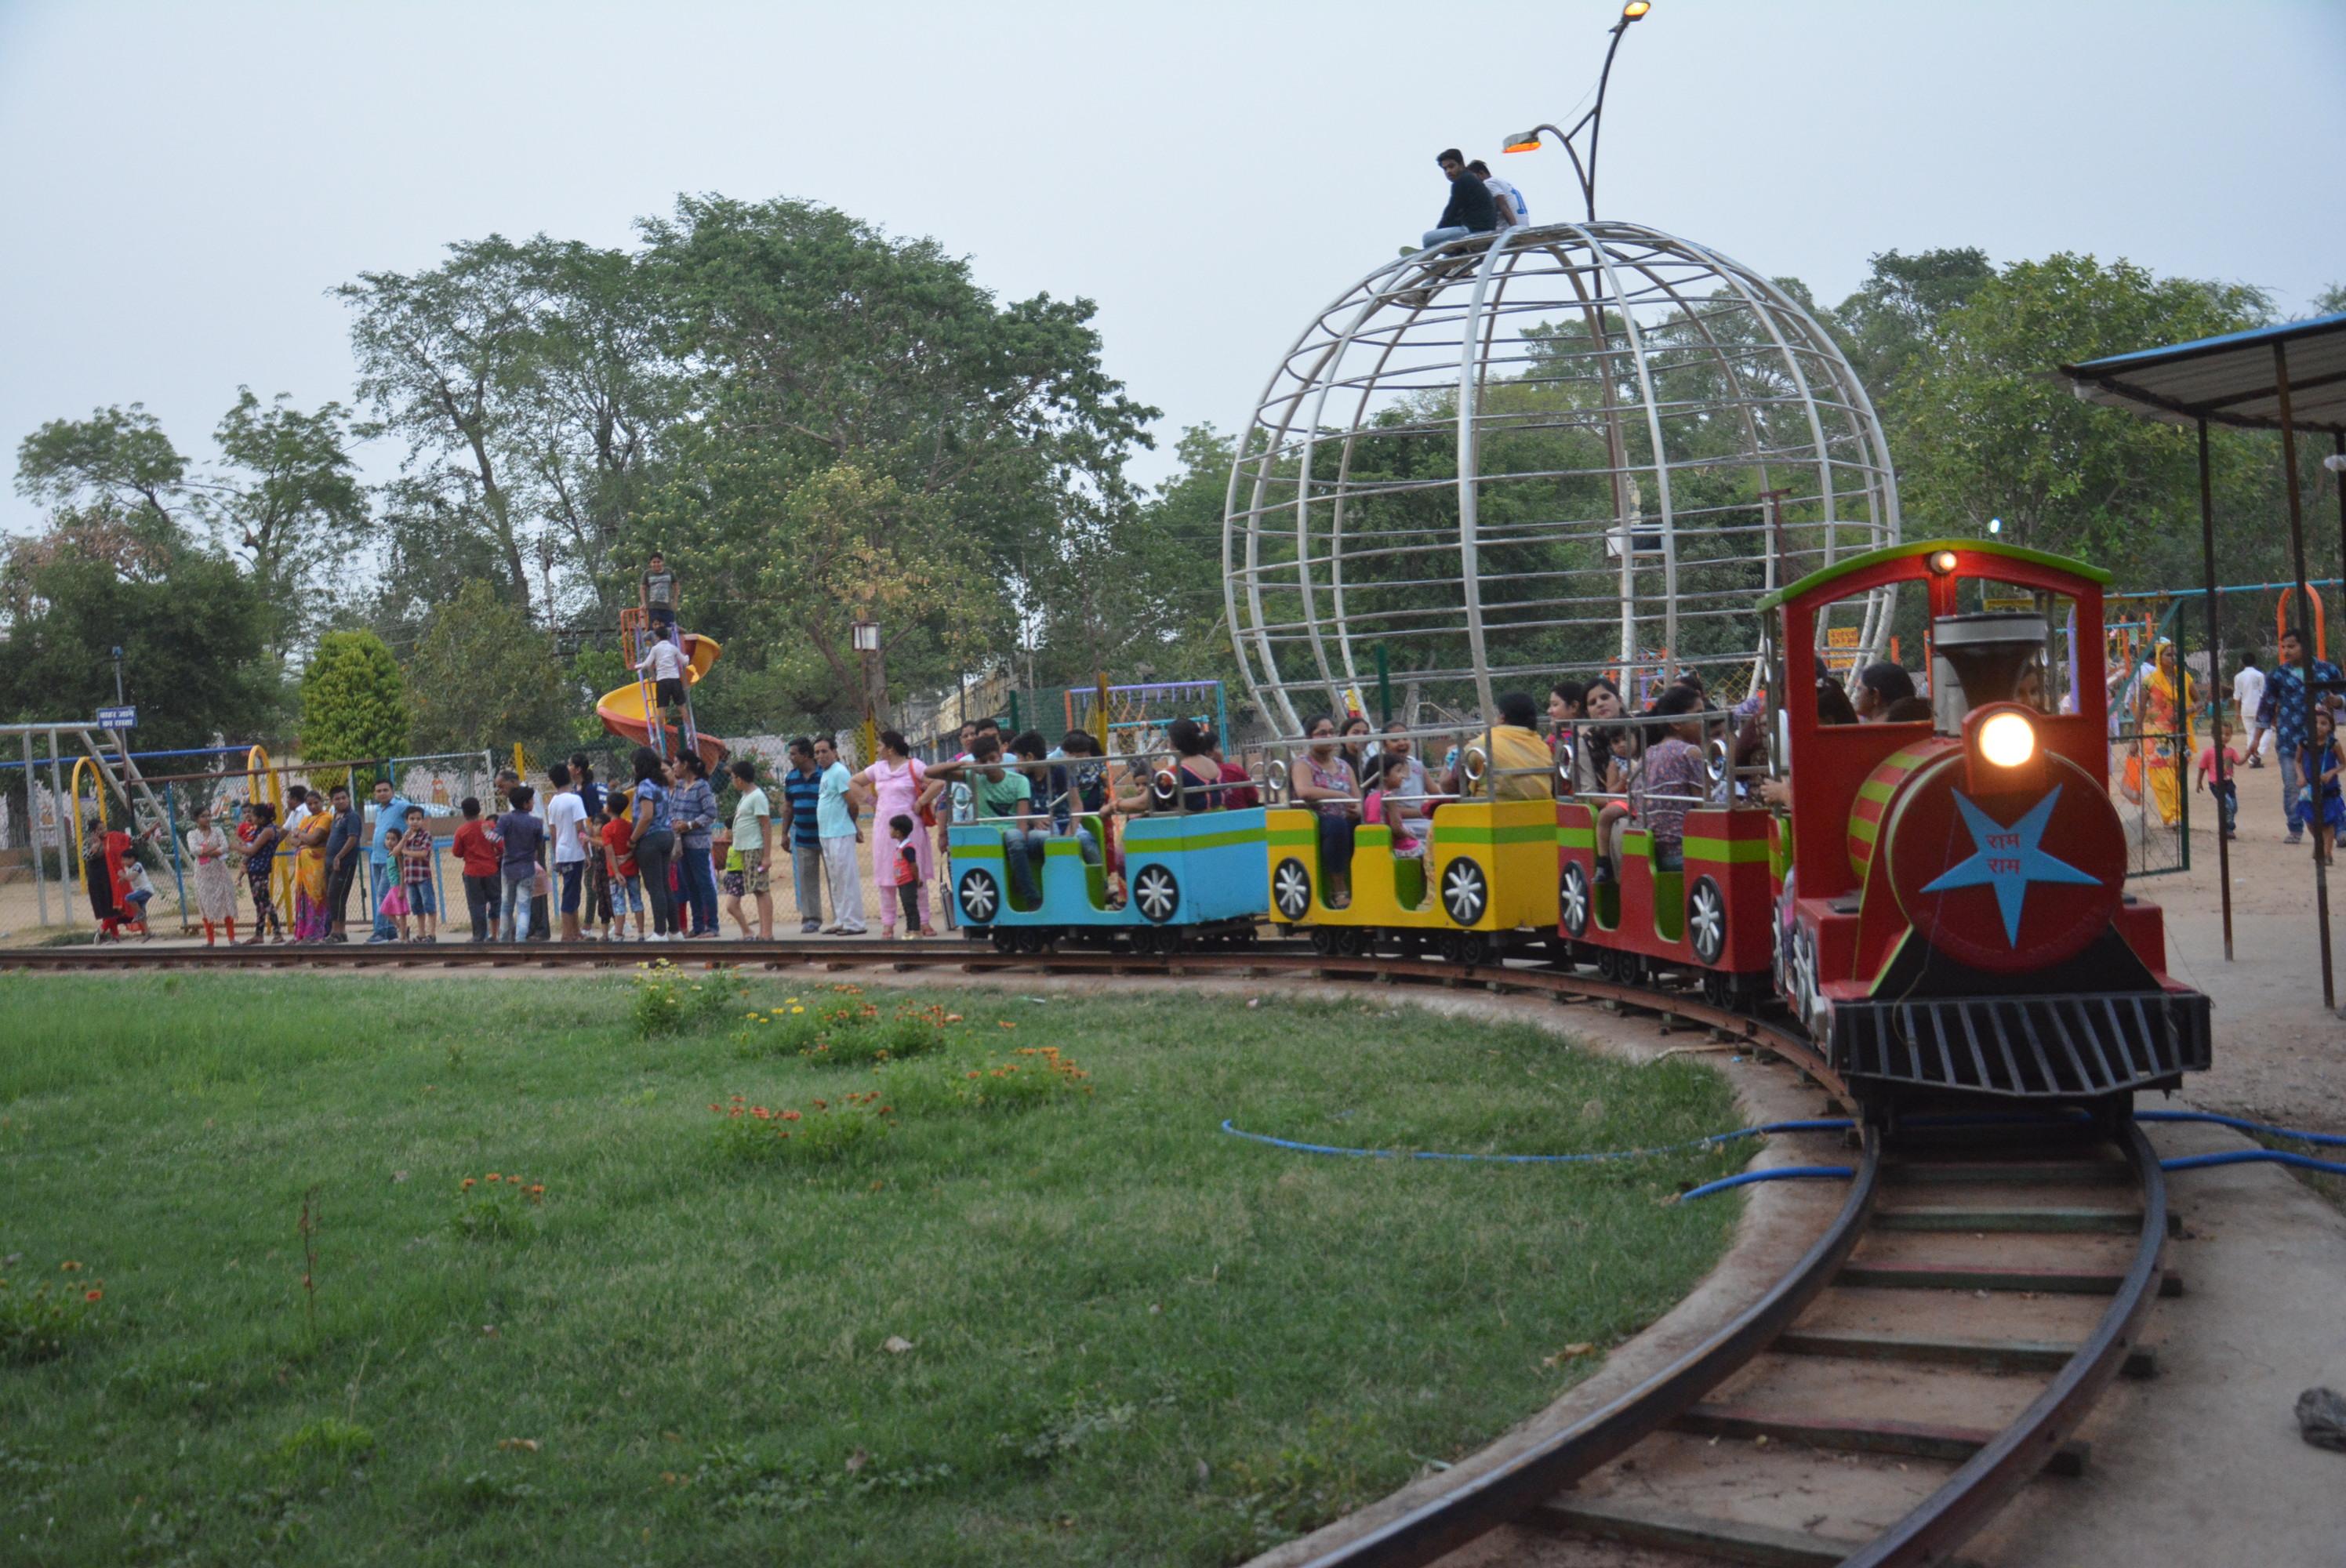 Kids enjoying on toy train at nehru garden in alwar